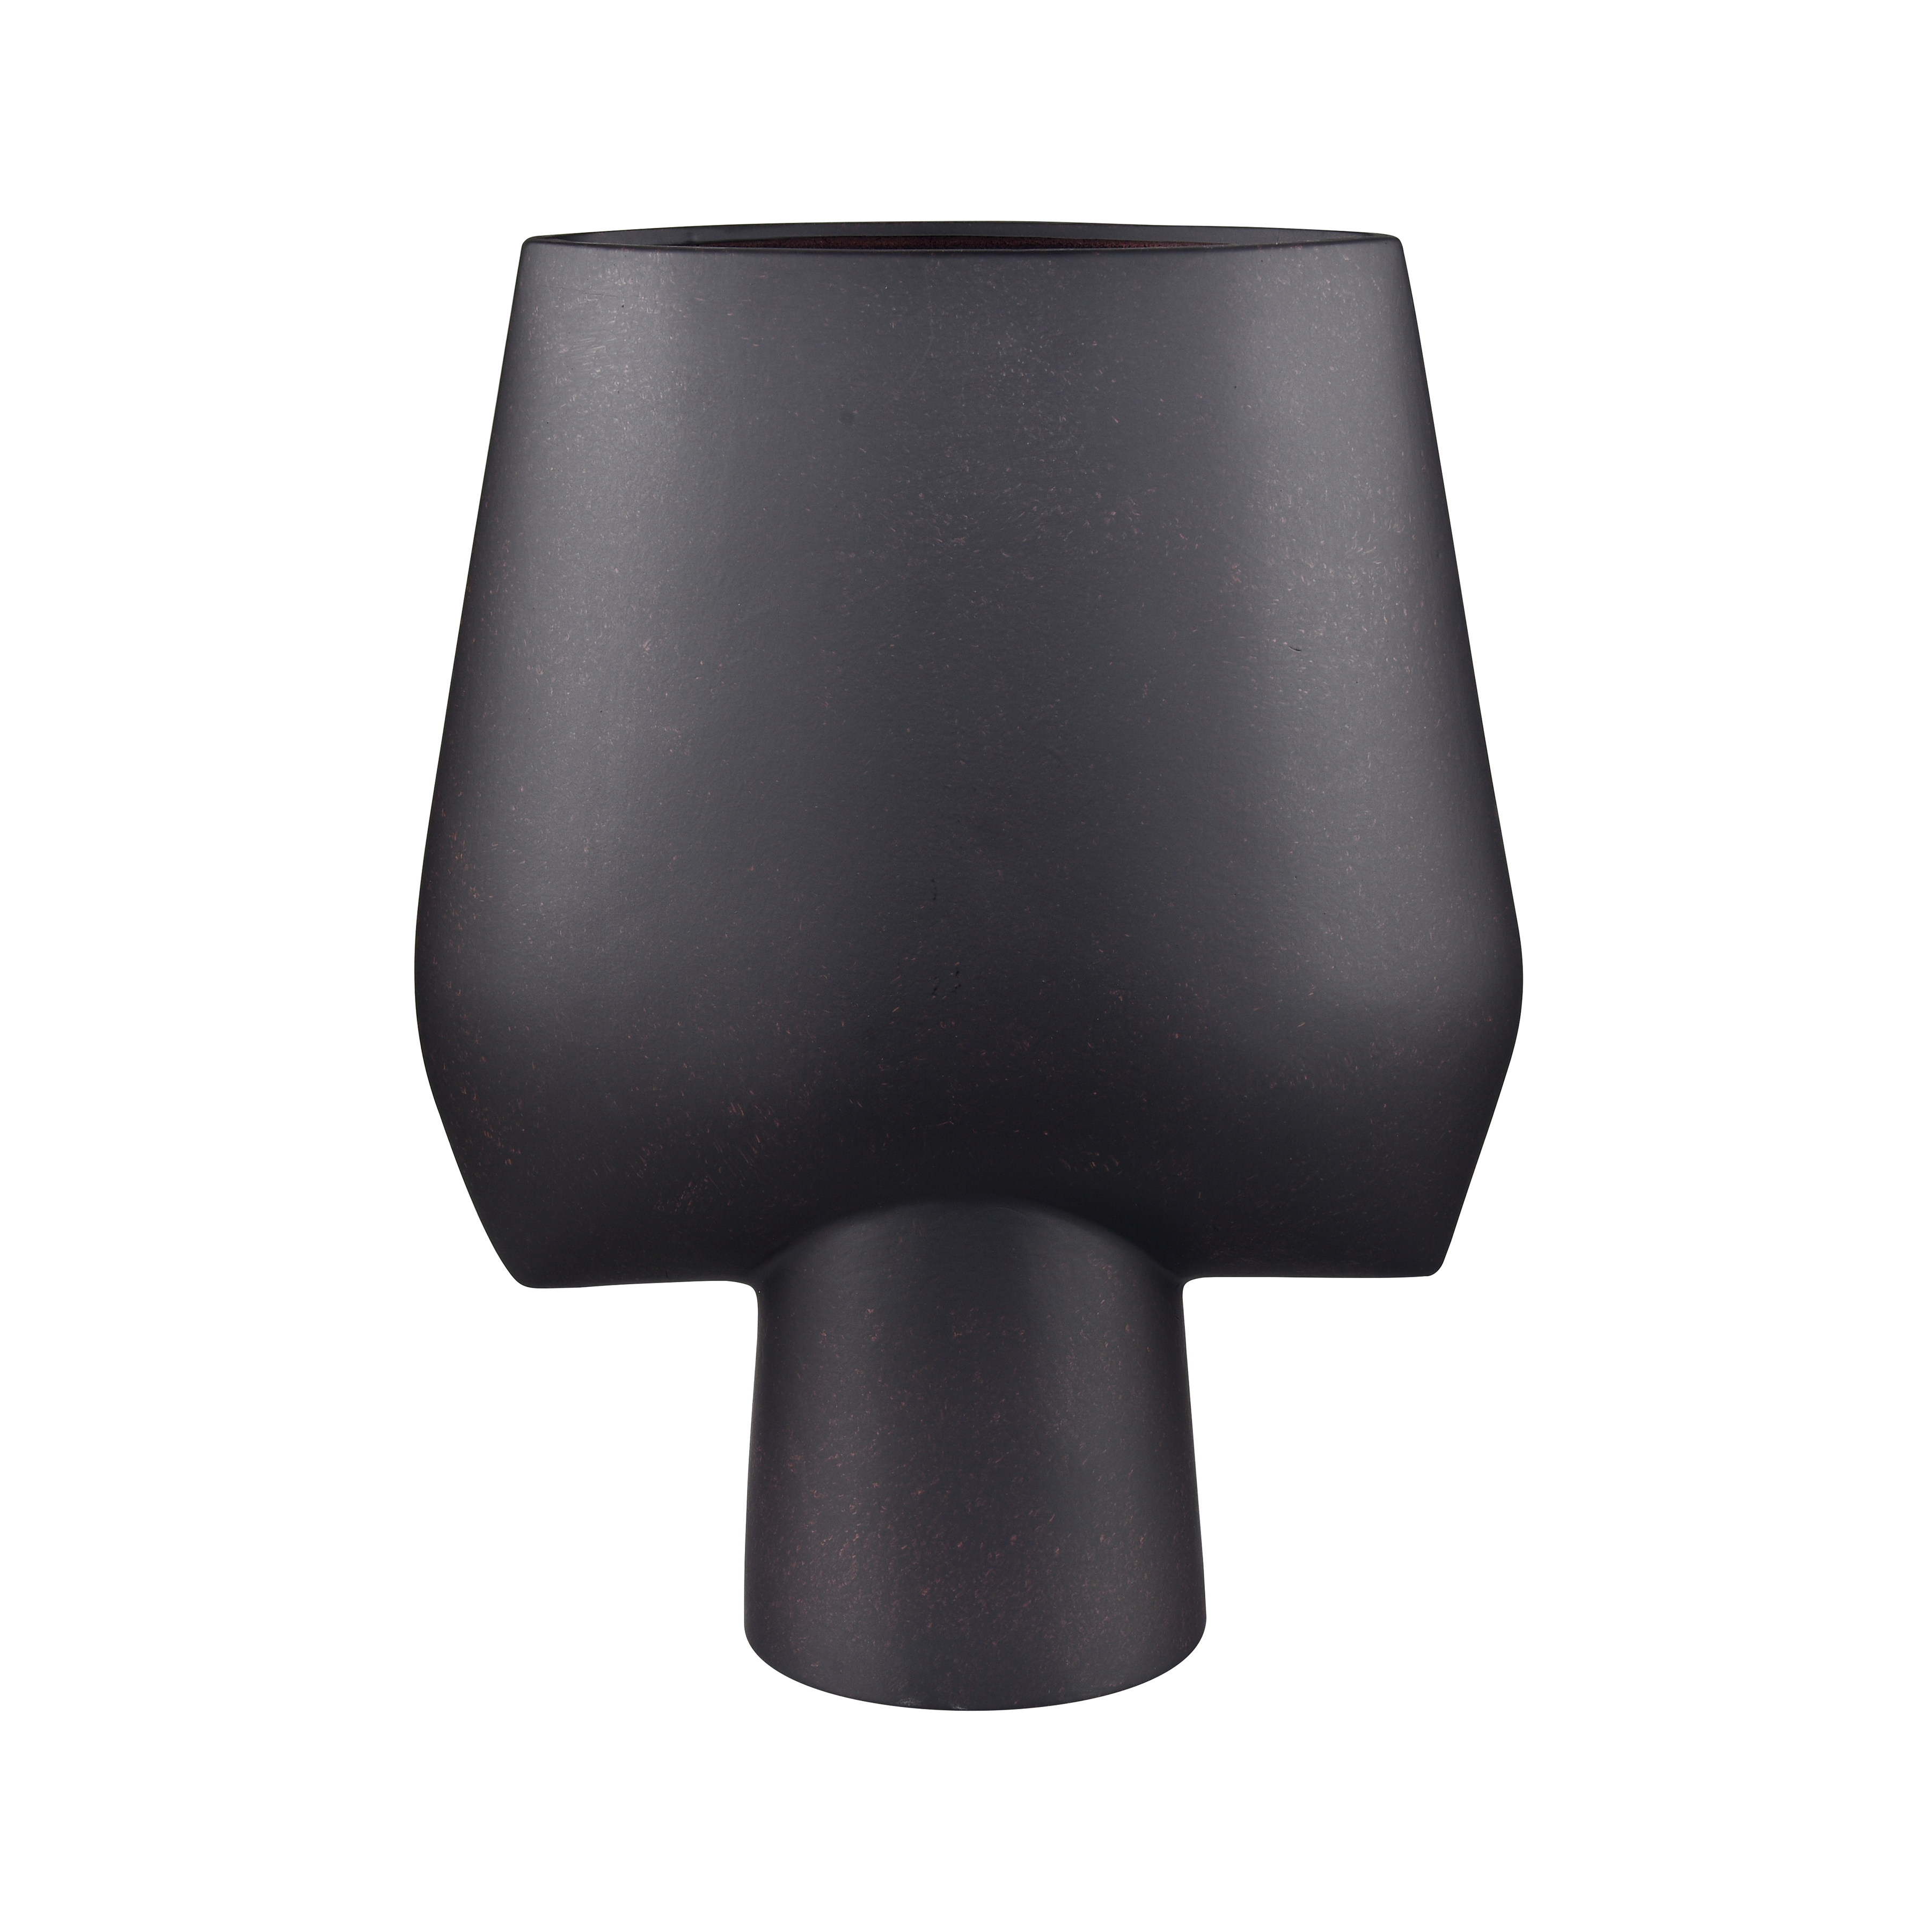 Hawking Vase - Extra Large Black - Image 0